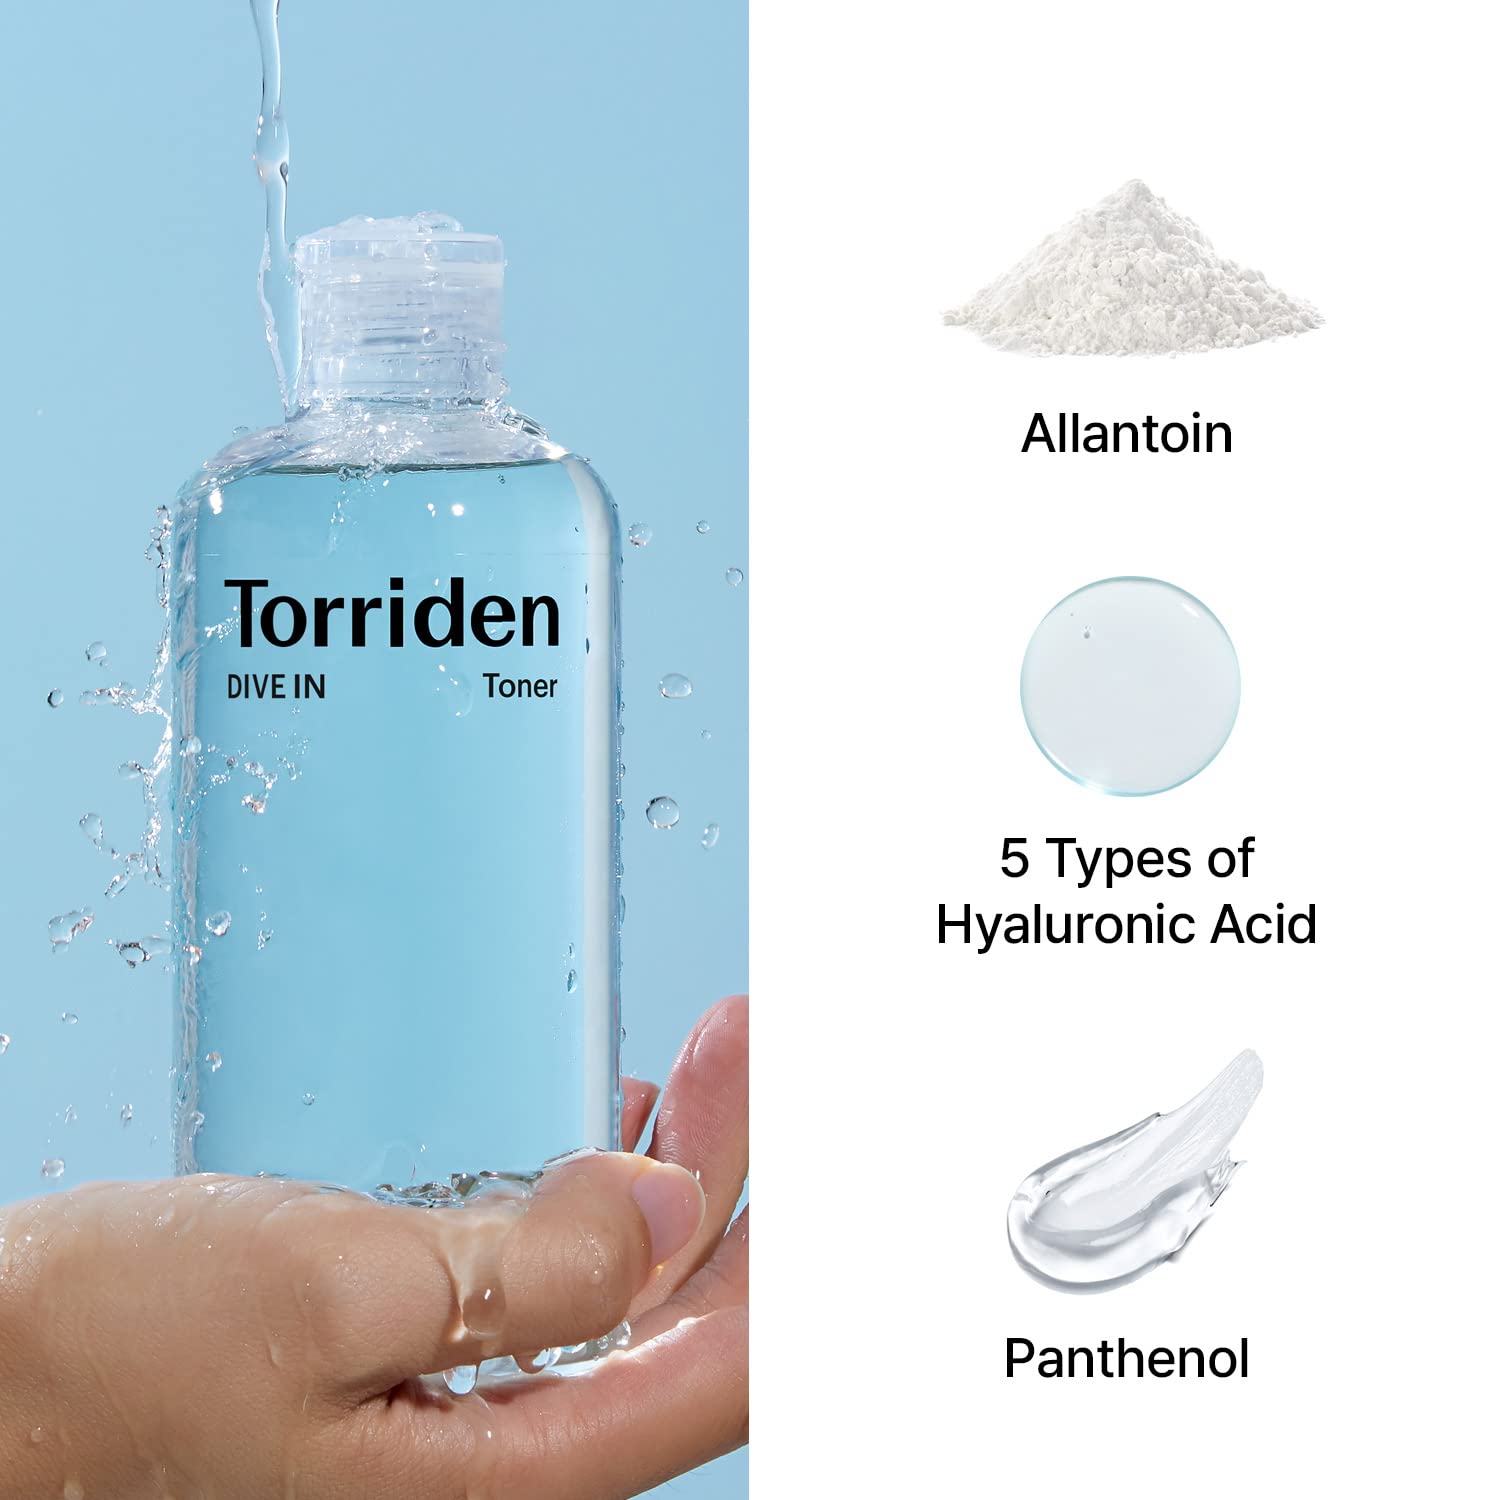 Torriden Dive-in Low-Molecular Hyaluronic Acid Toner